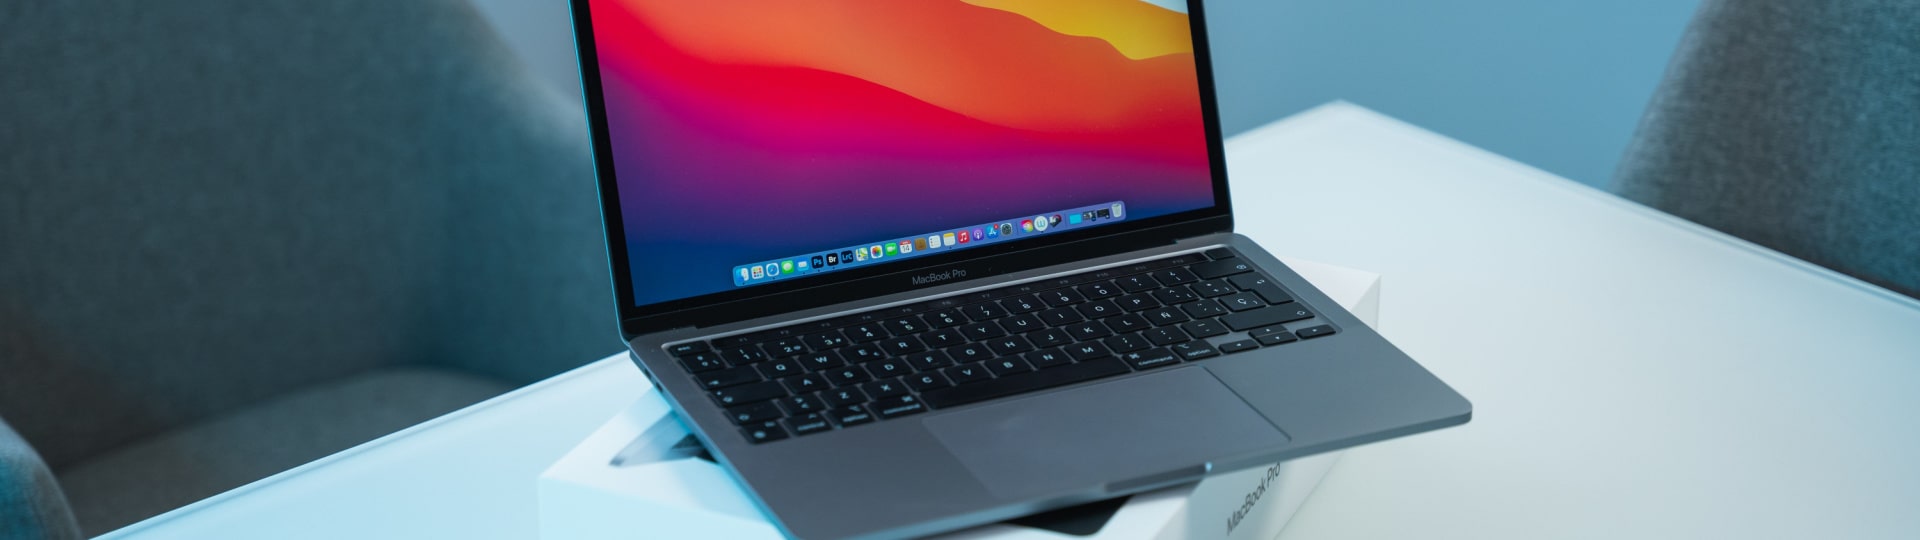 Apple jedná o výrobě macbooků v Thajsku